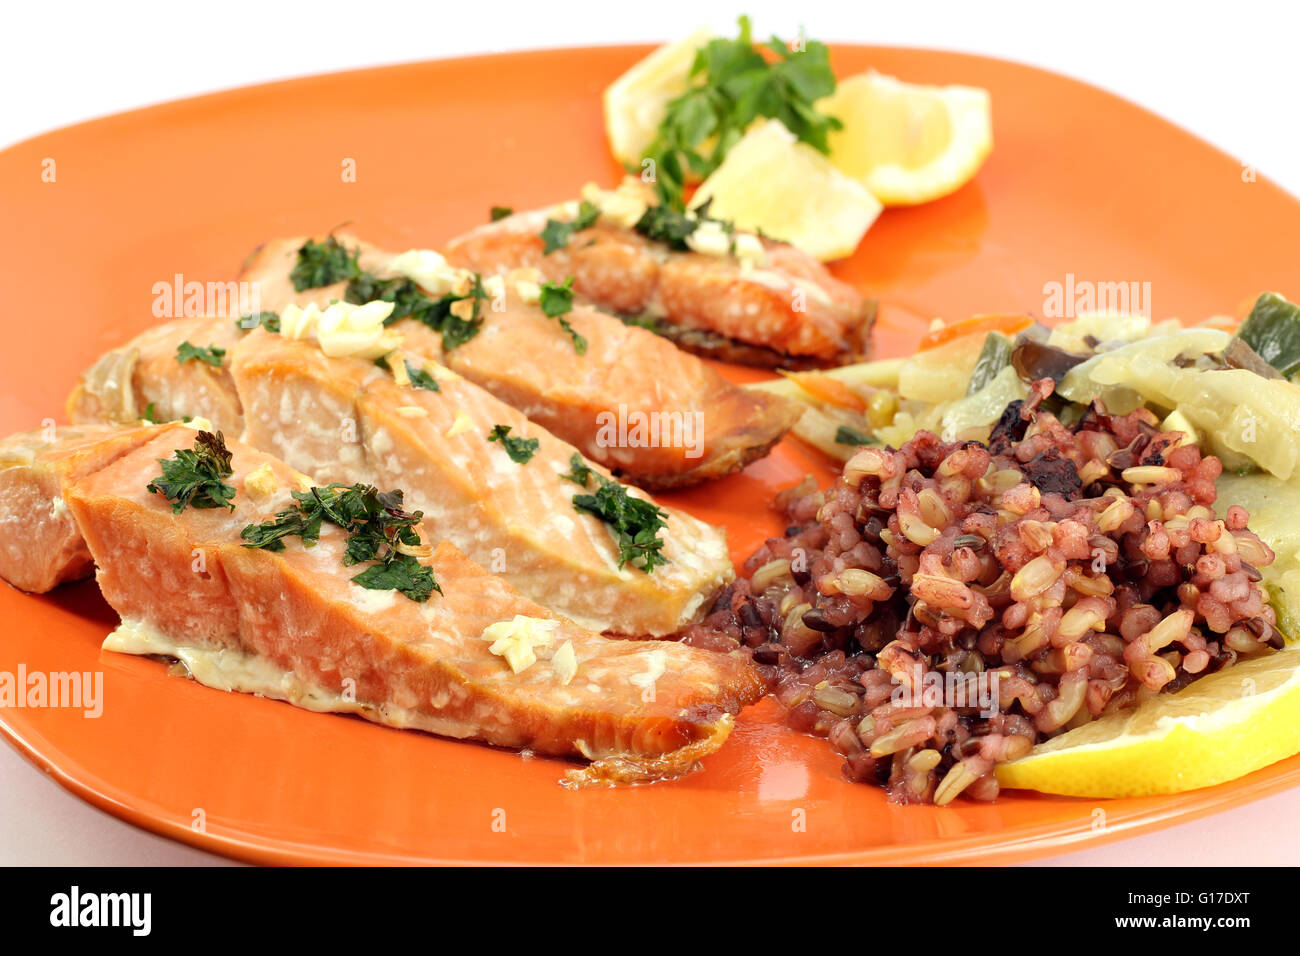 salmon with salad and lemon Stock Photo